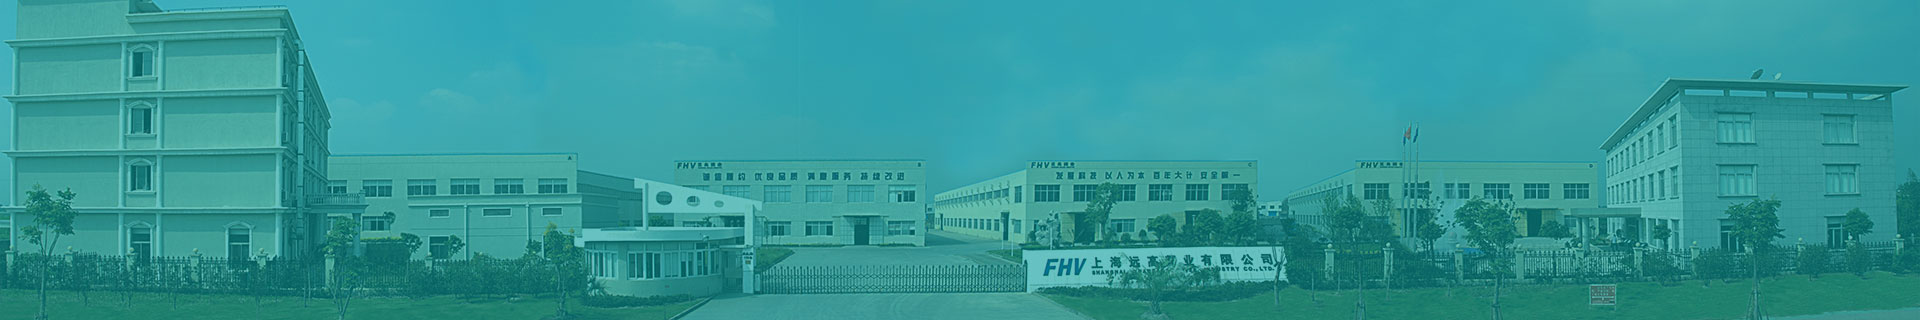 Manufacture Facility